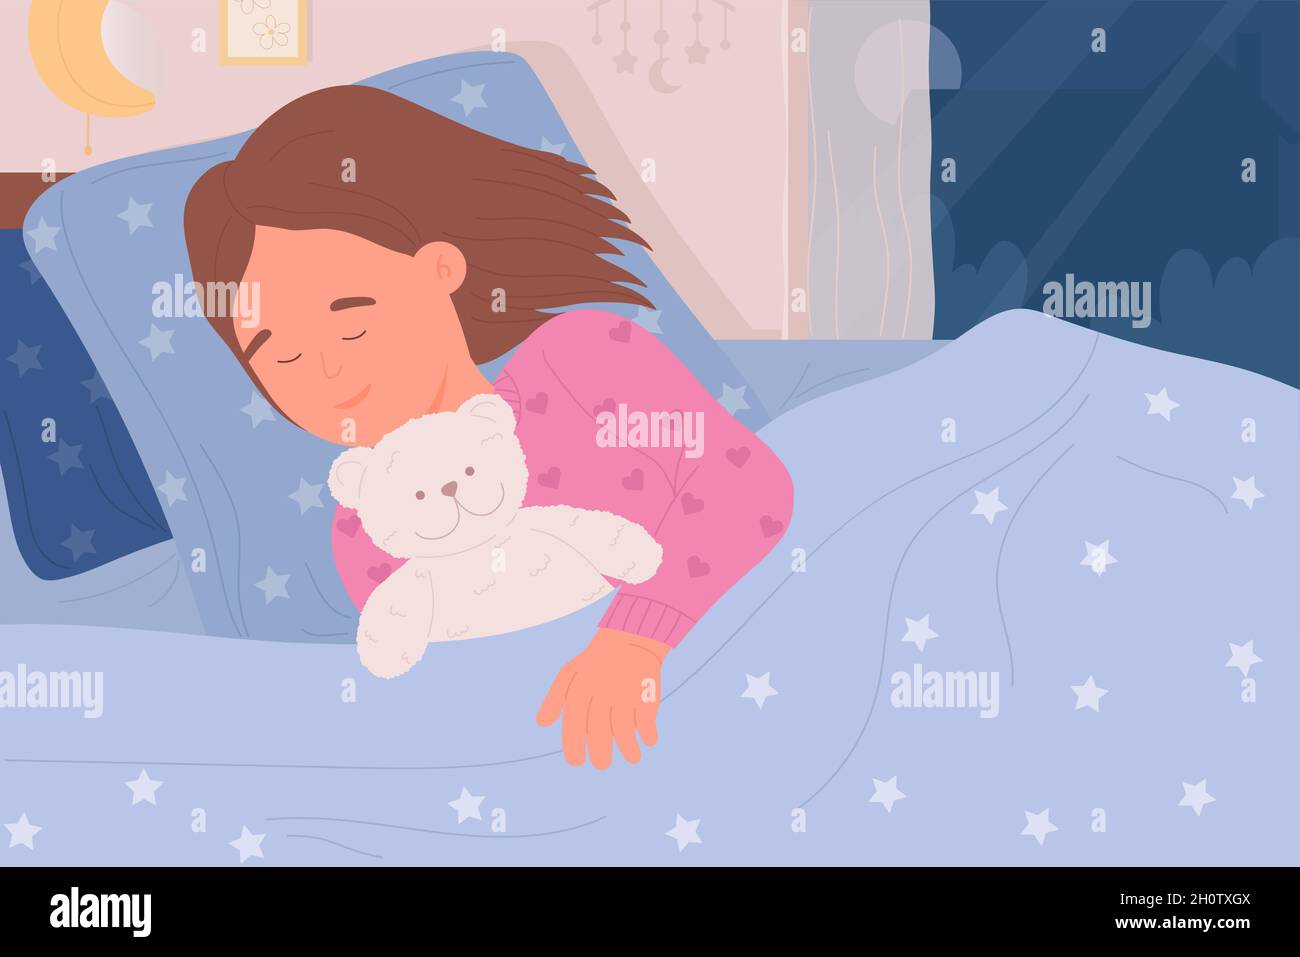 Fille enfant dormant dans le lit avec l'illustration vectorielle d'ours en peluche.Dessin animé petit enfant endormi personnage allongé sur un oreiller sous une couverture, câlin mignon peluche jouet dans un intérieur confortable.Concept Sweet Dreams Illustration de Vecteur